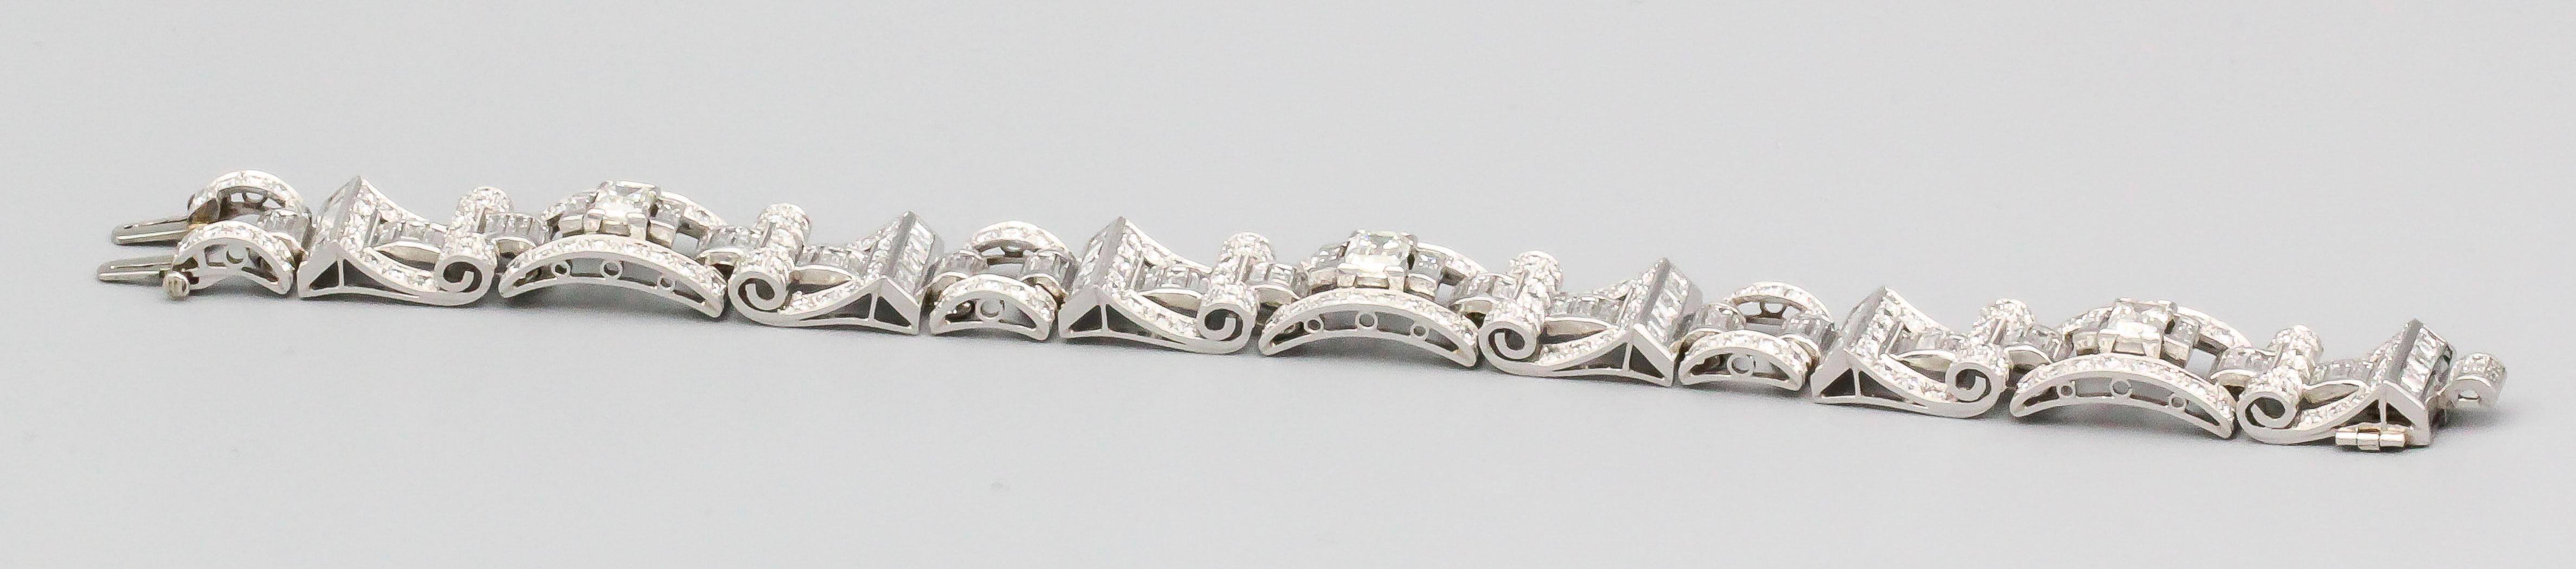 Oscar Heyman Art Deco Diamond Platinum Bracelet For Sale 1